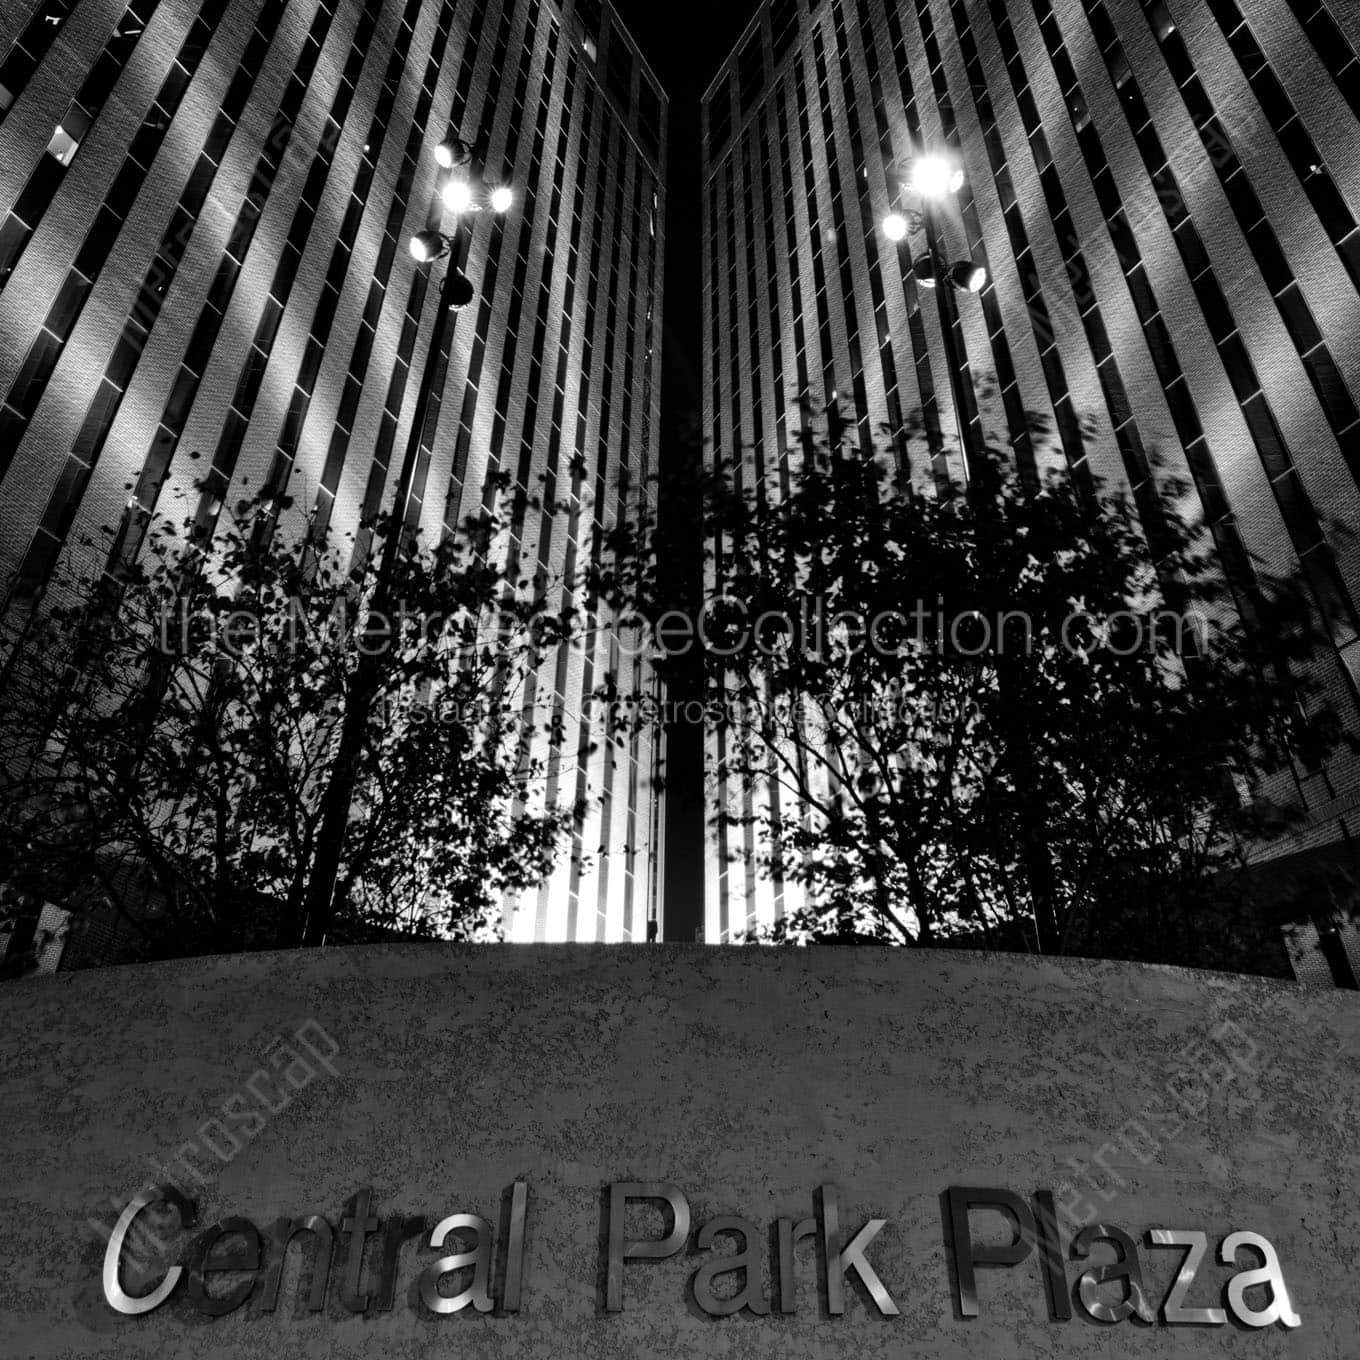 omaha central park plaza Black & White Office Art